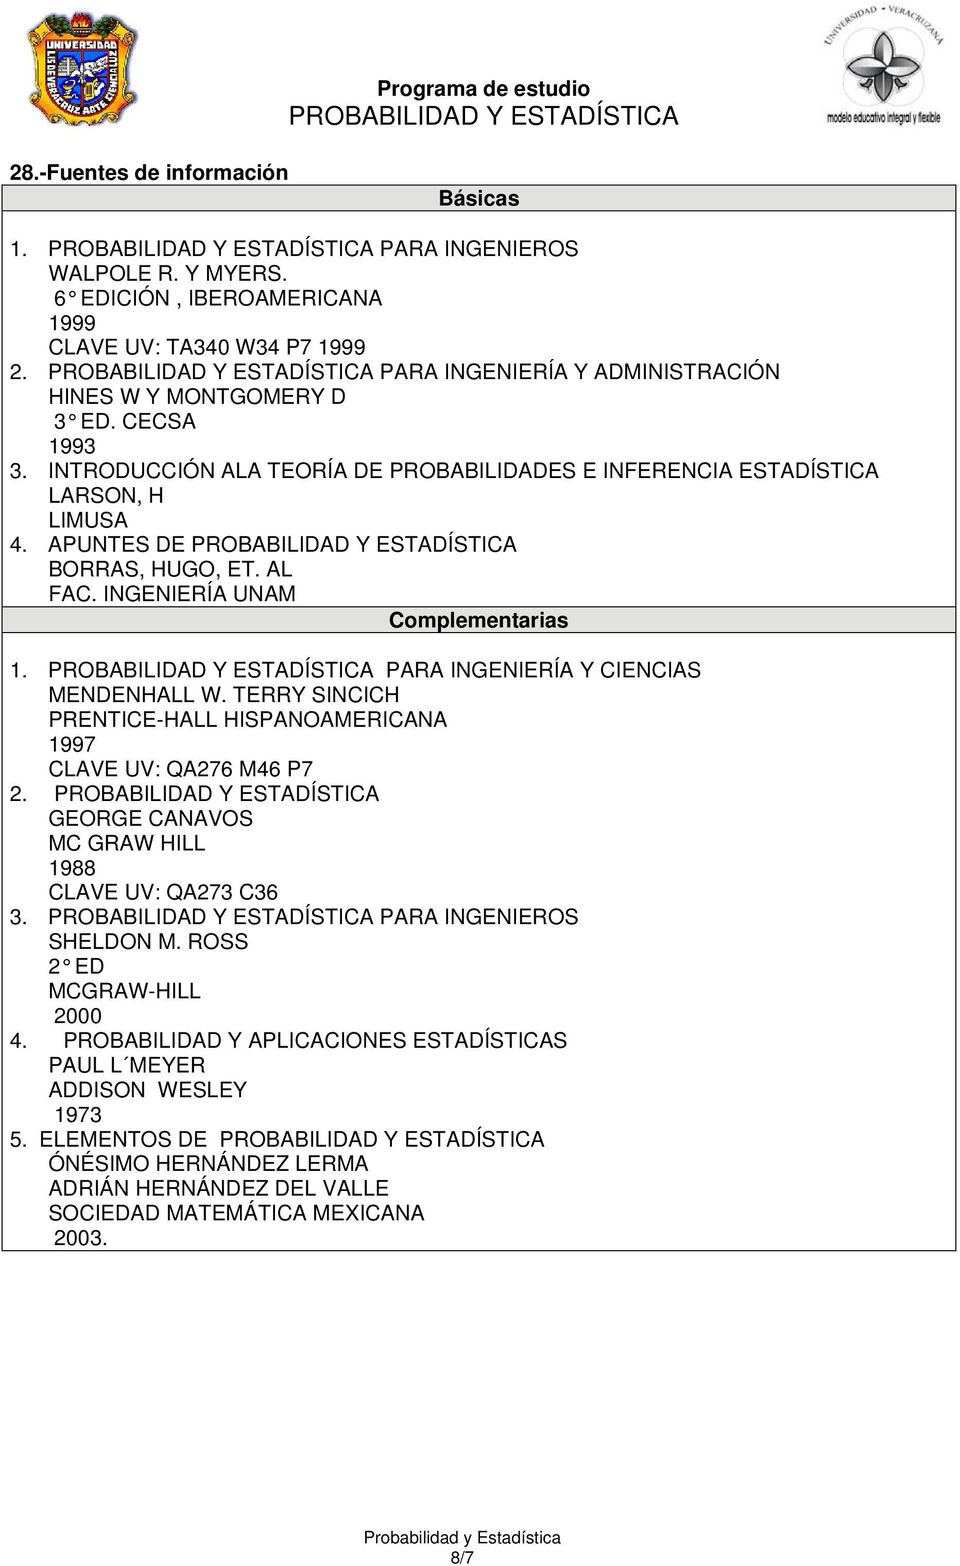 AL FAC. INGENIERÍA UNAM Complementarias 1. PARA INGENIERÍA Y CIENCIAS MENDENHALL W. TERRY SINCICH PRENTICE-HALL HISPANOAMERICANA 1997 CLAVE UV: QA276 M46 P7 2.